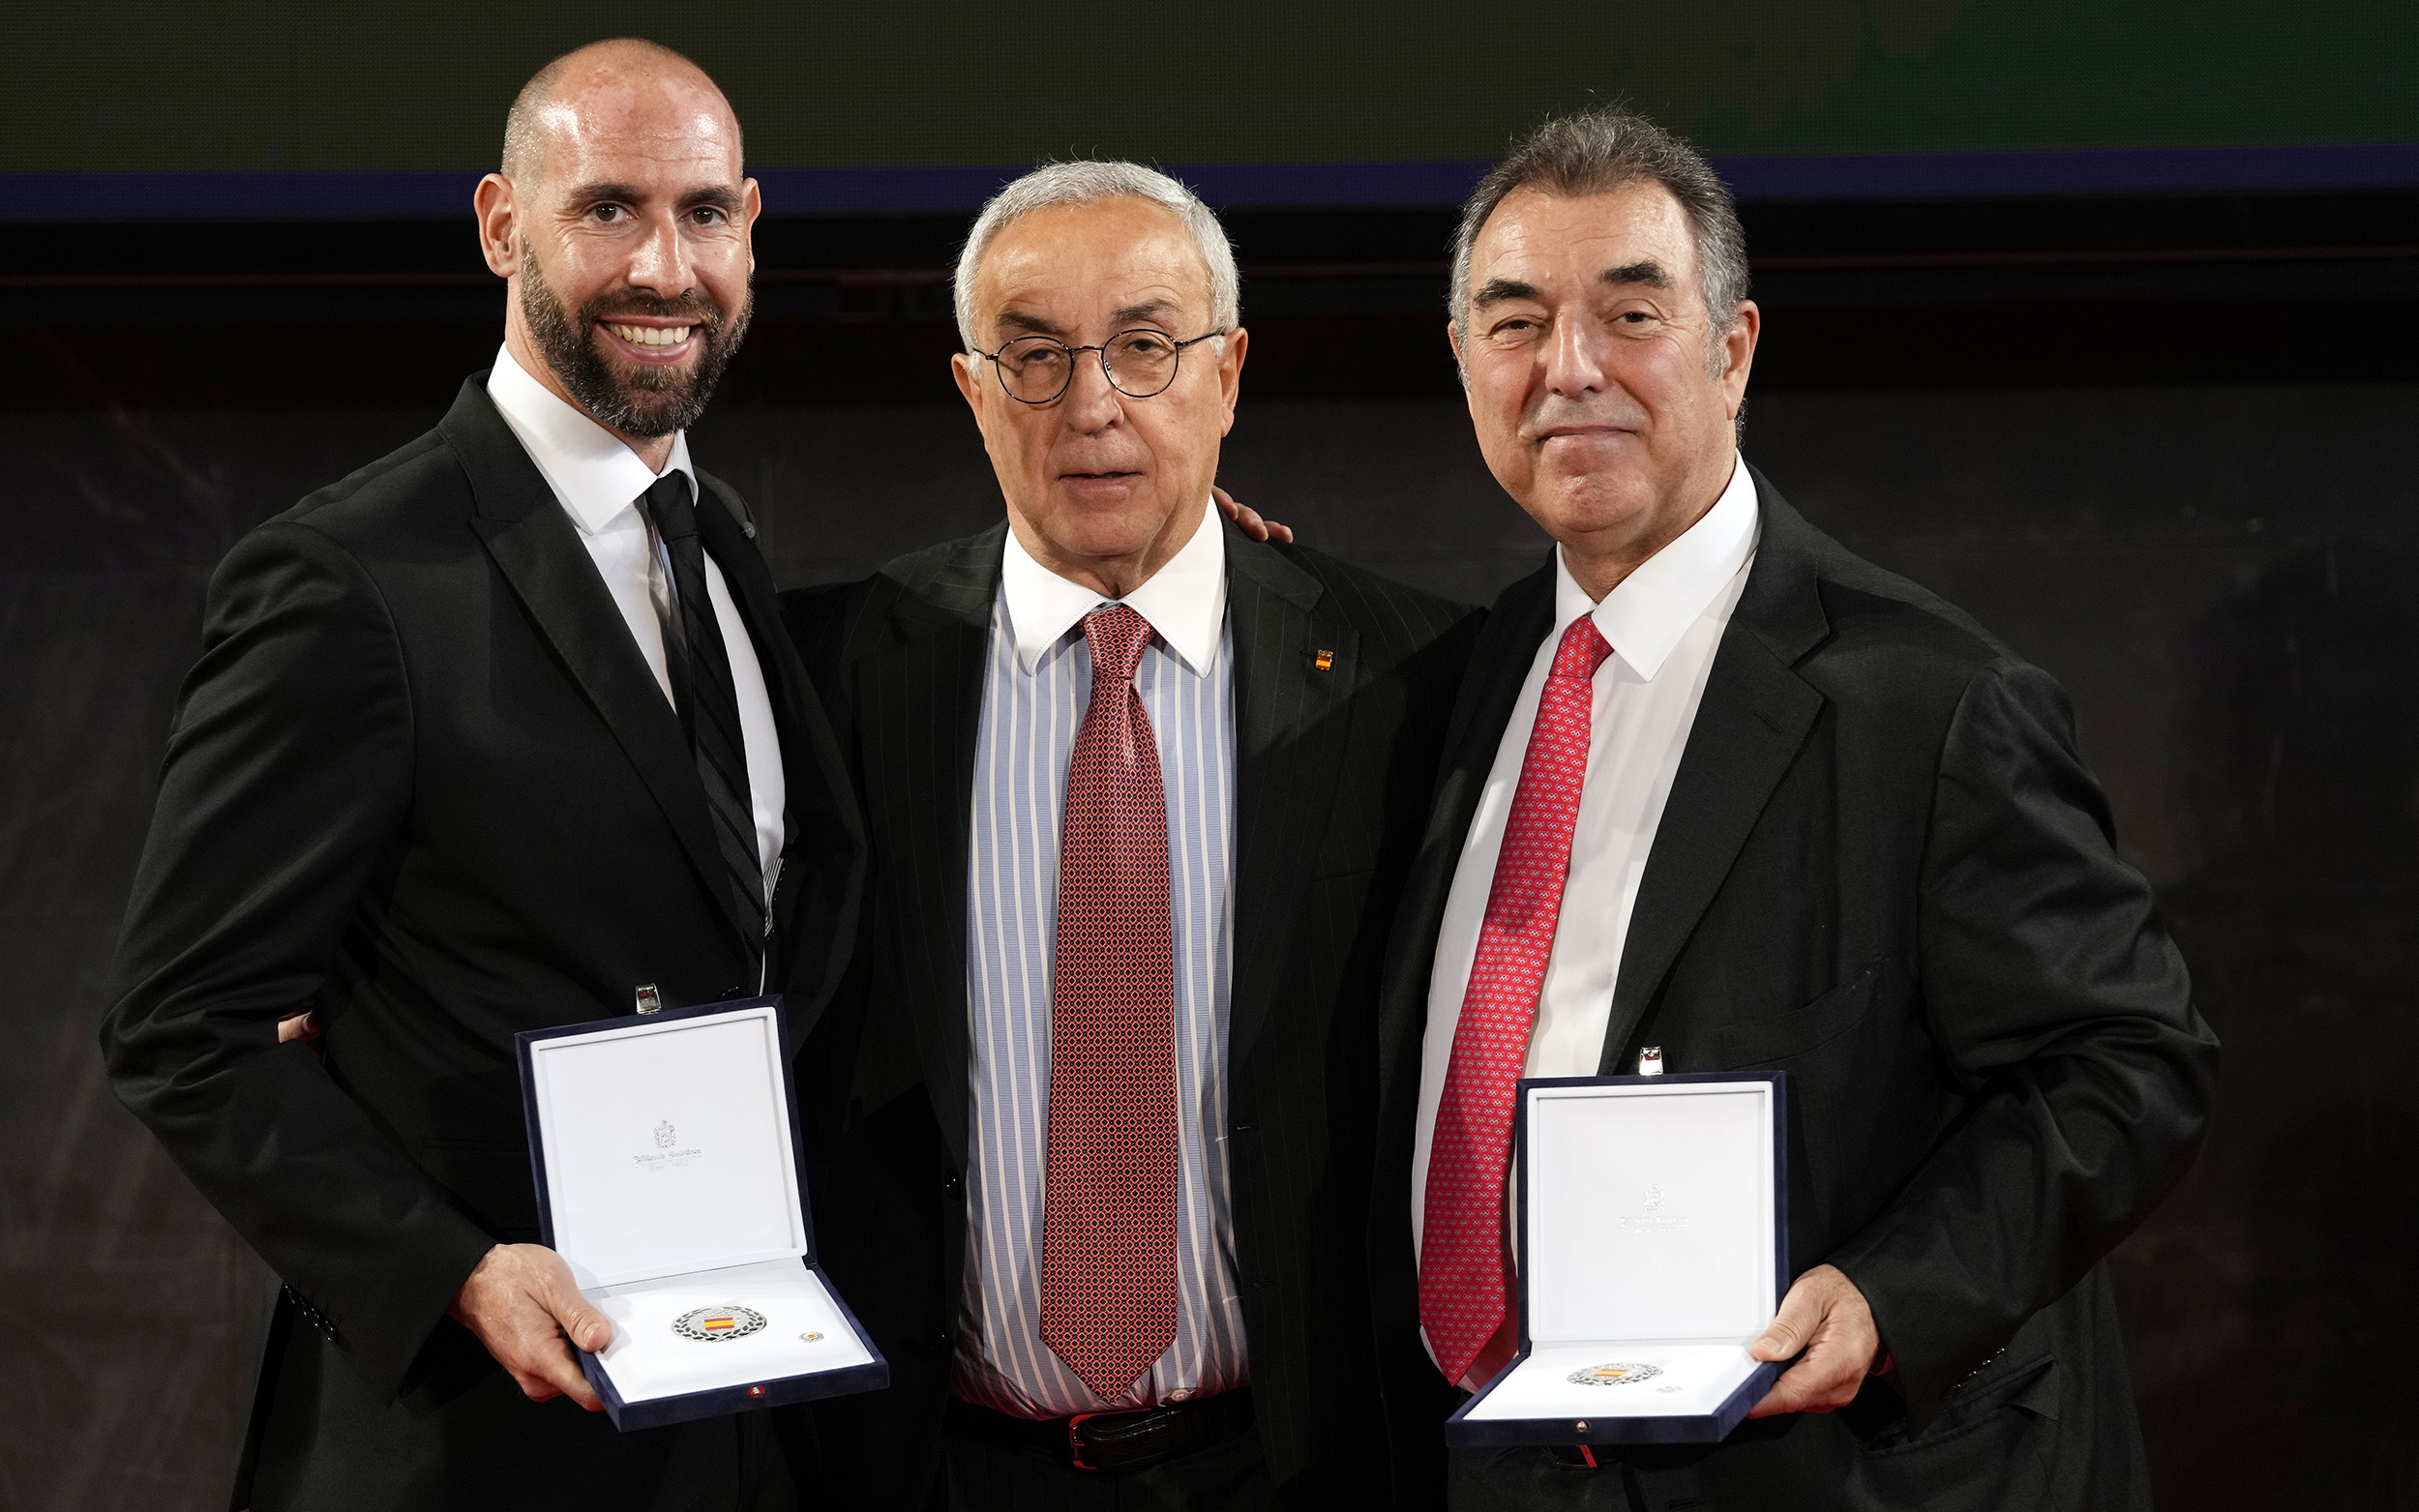 , Frank González y Ander Mirambell reciben la Orden Olímpica del COE, Real Federación Española Deportes de Hielo